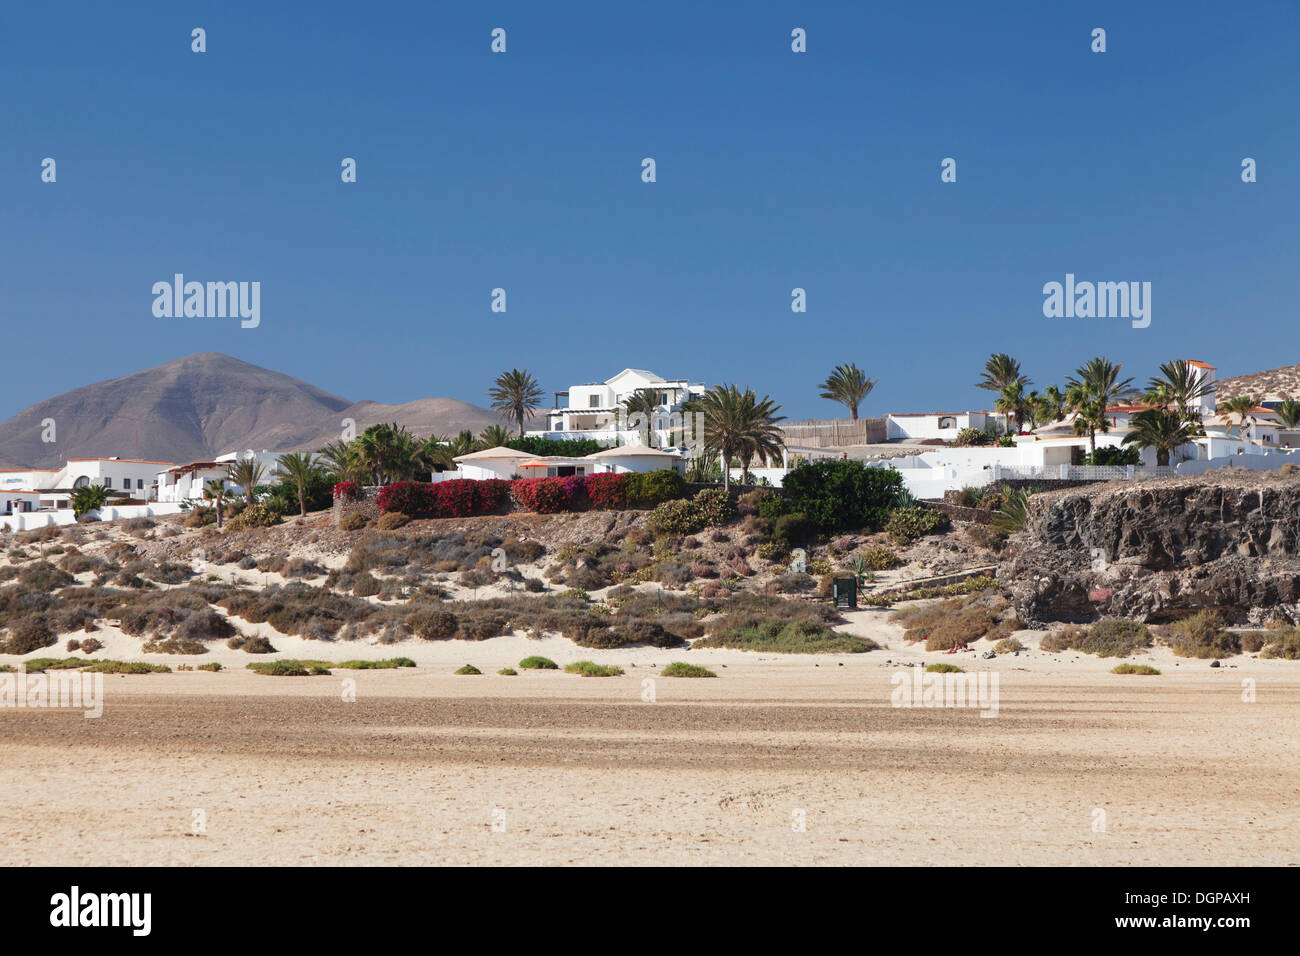 White buildings and palm trees, Casas Risco del Paso, Risco del Paso, Fuerteventura, Canary Islands, Spain Stock Photo